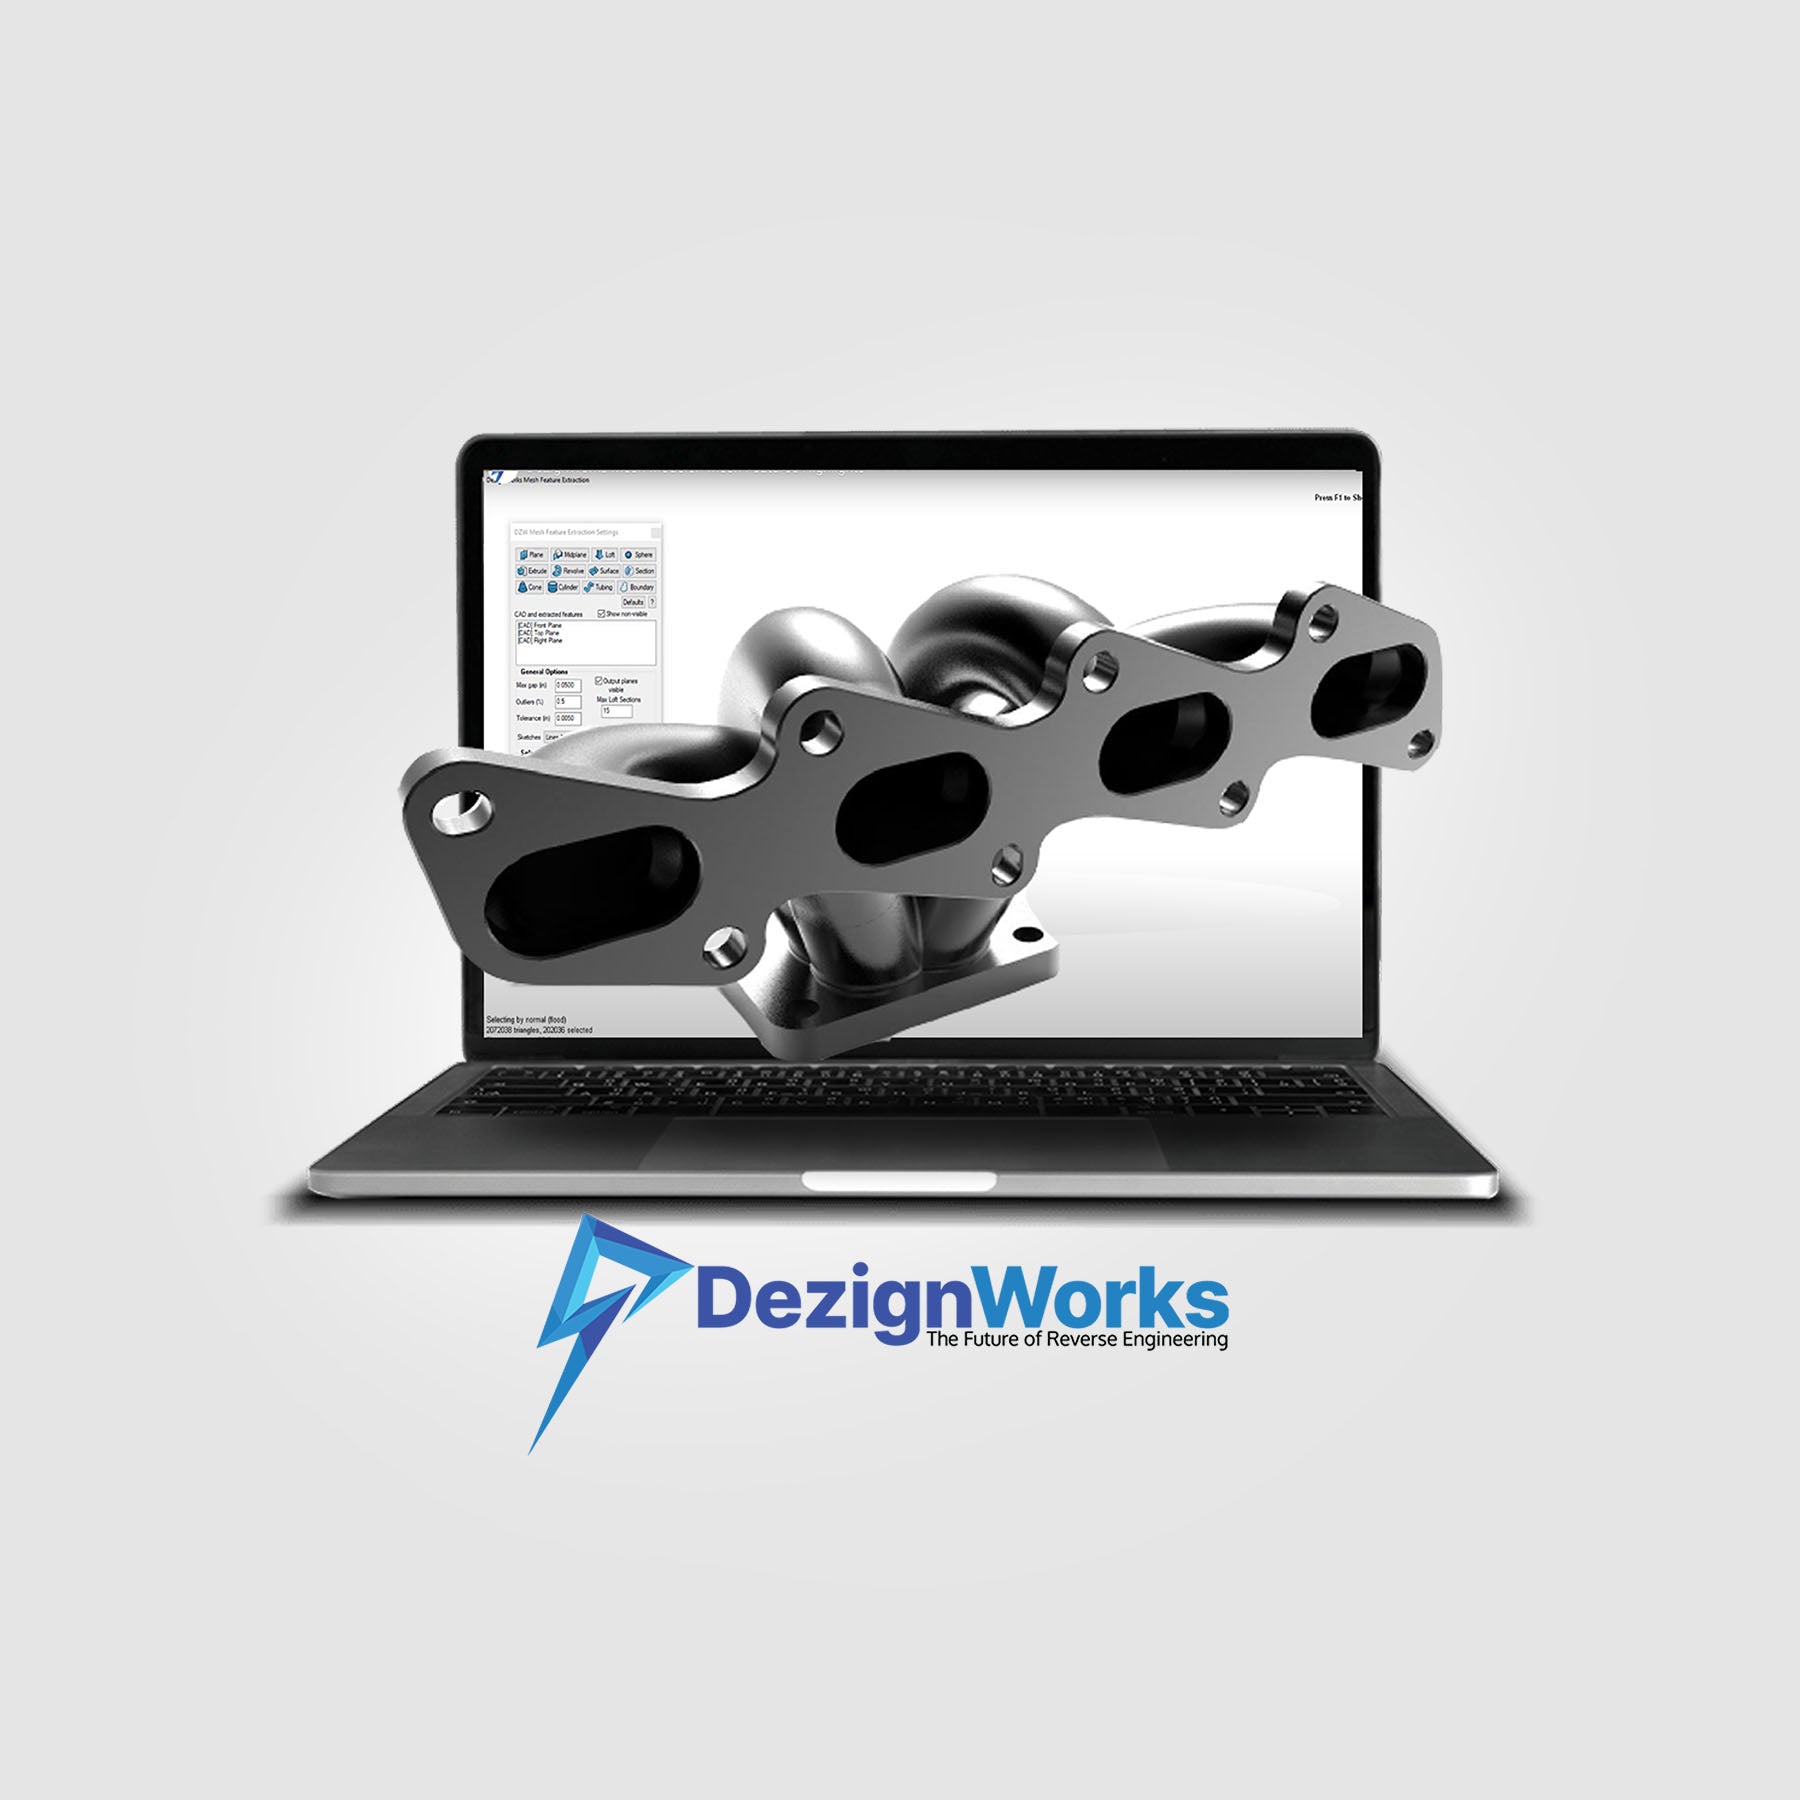 DezignWorks for SolidWorks - Mesh Modeler Version